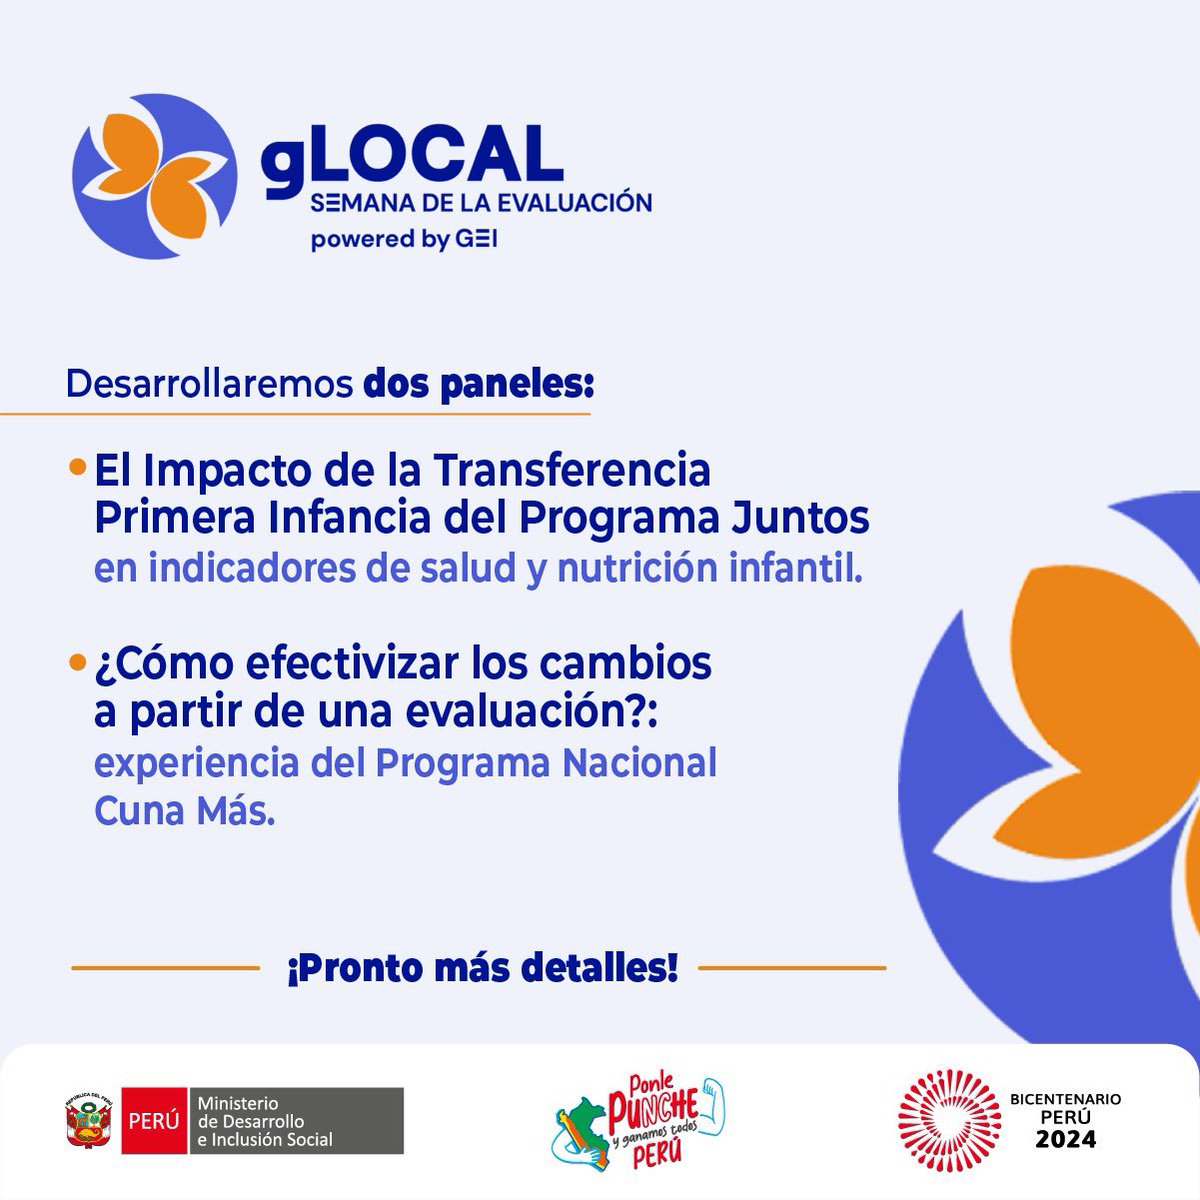 📢 ¡No te pierdas la Semana de Evaluación #gLocal 2024! El Midis presentará dos paneles: 1° sobre el impacto del Programa JUNTOS en salud y nutrición infantil, y 2° sobre la efectividad del Programa Nacional Cuna Más.
¡Síguenos para más información #EvidenciaMidis #gLOCAL2024